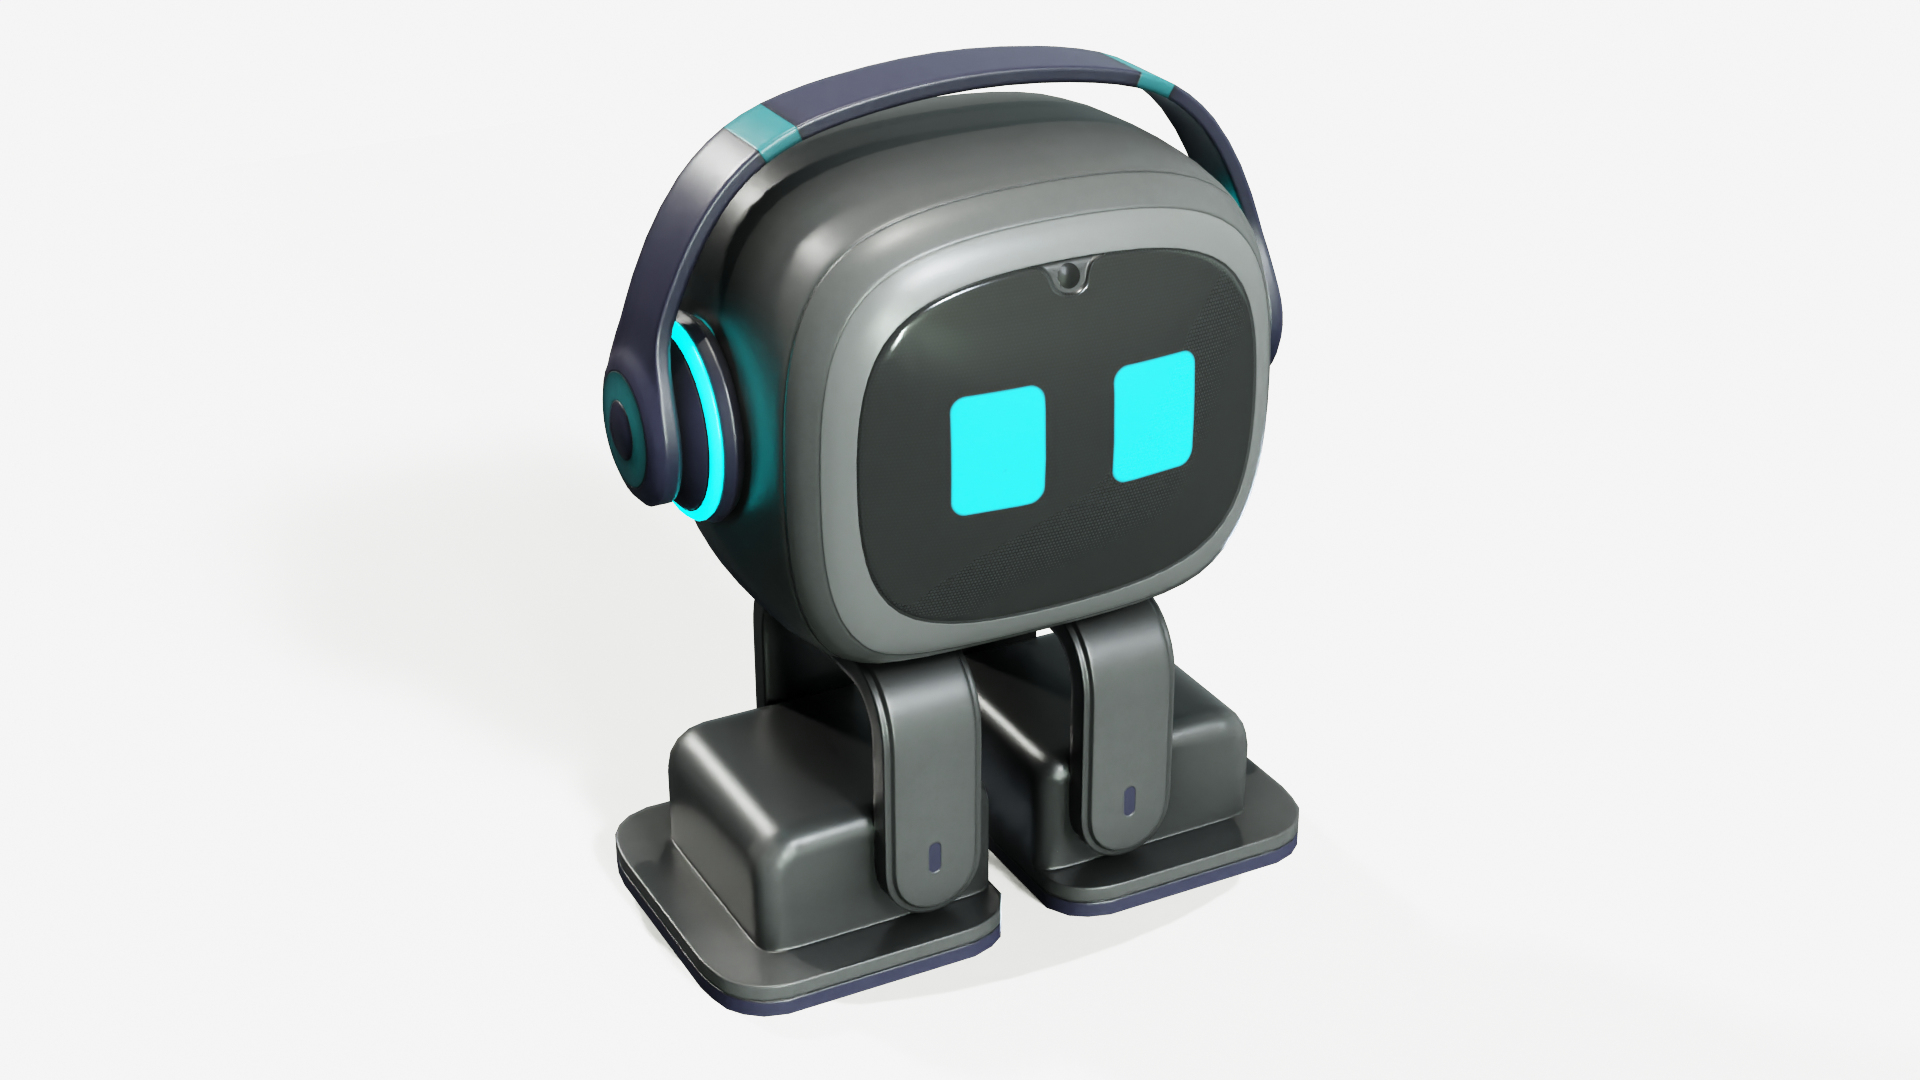 3D anki cozmo robot toy model - TurboSquid 1274286